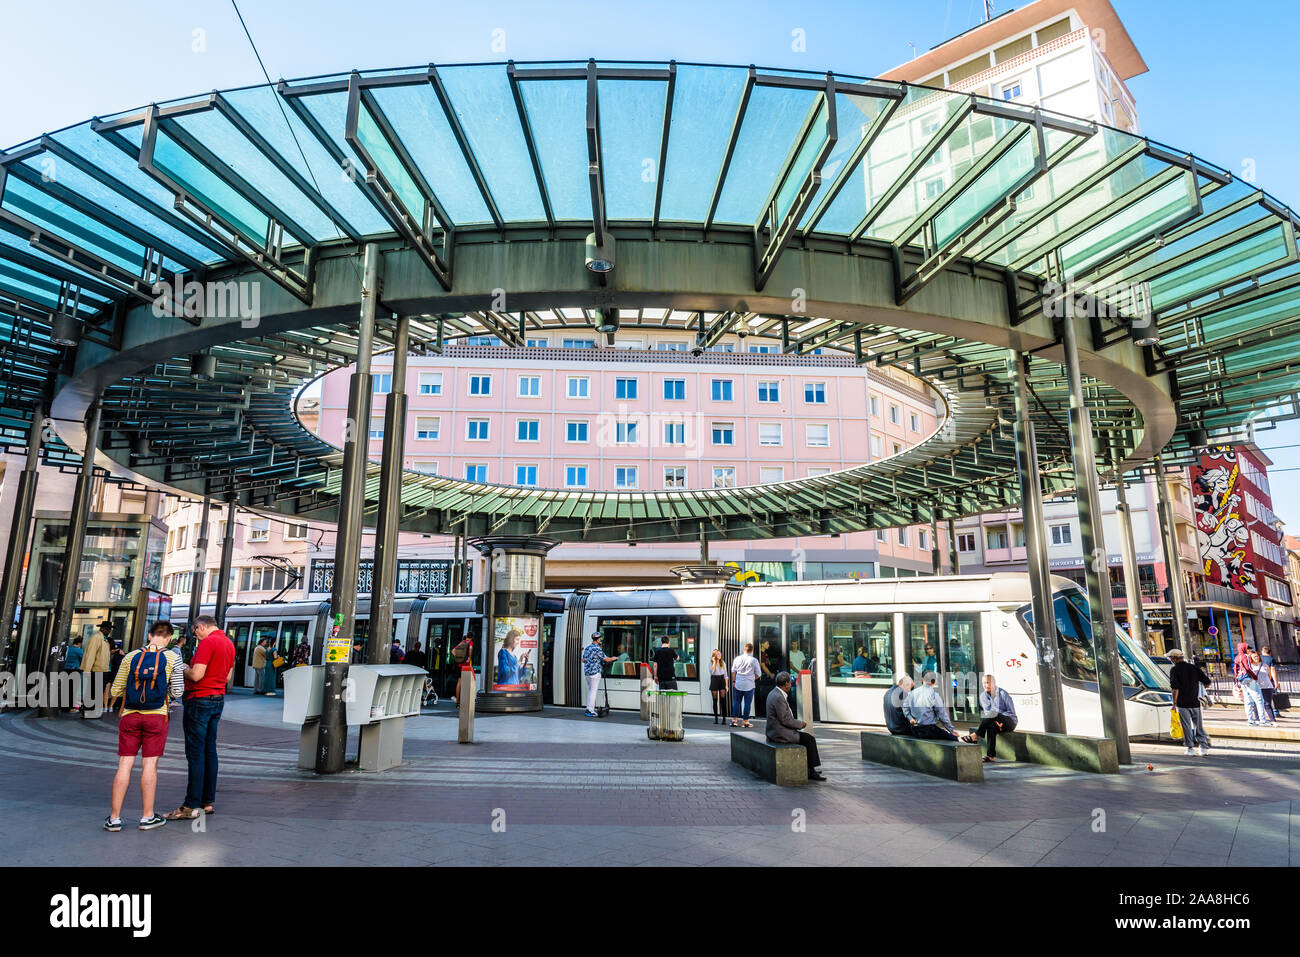 Ein citadis-Straßenbahn ist Stationierung am Bahnhof Homme de Fer, dem verkehrsreichsten Bahnhof der CTS-Netzwerk in Straßburg, Frankreich, durch einen gläsernen Rotunde gekrönt Stockfoto